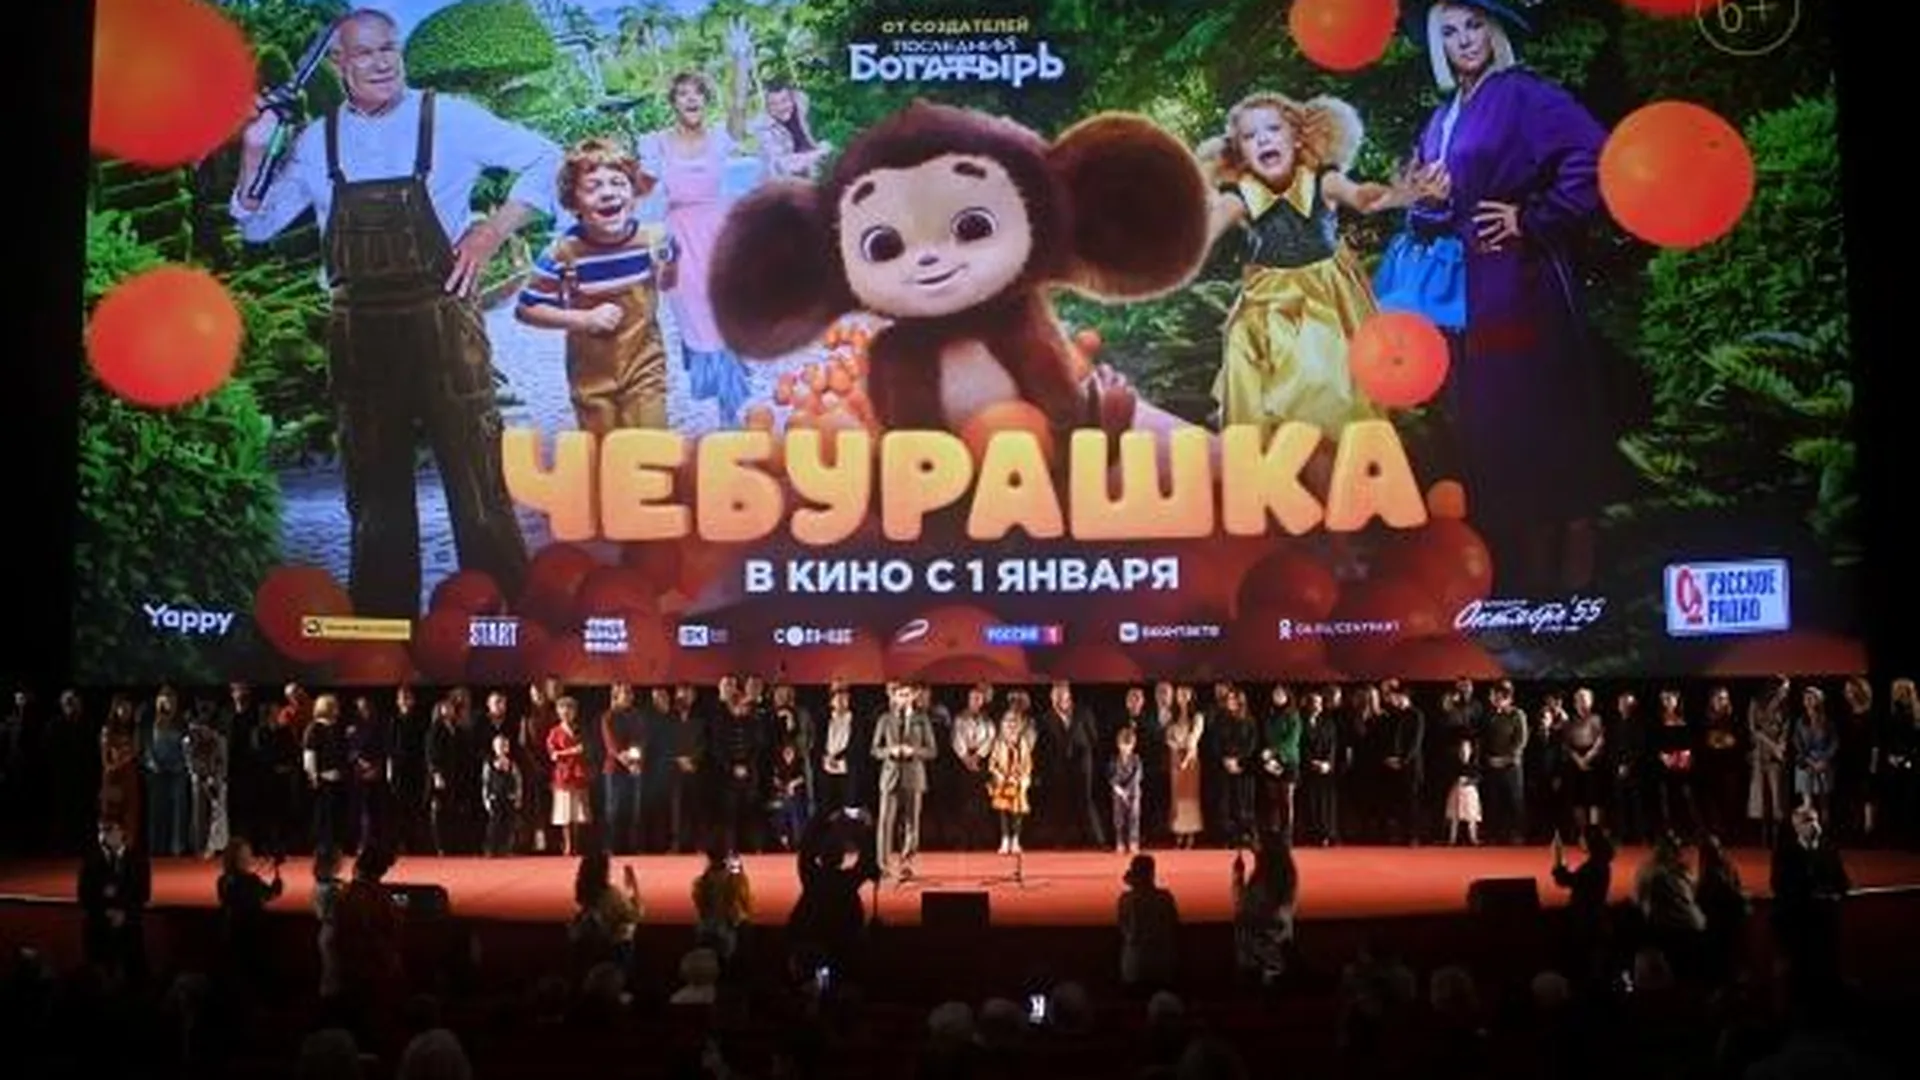 Российский фильм «Чебурашка» показали в Сербии